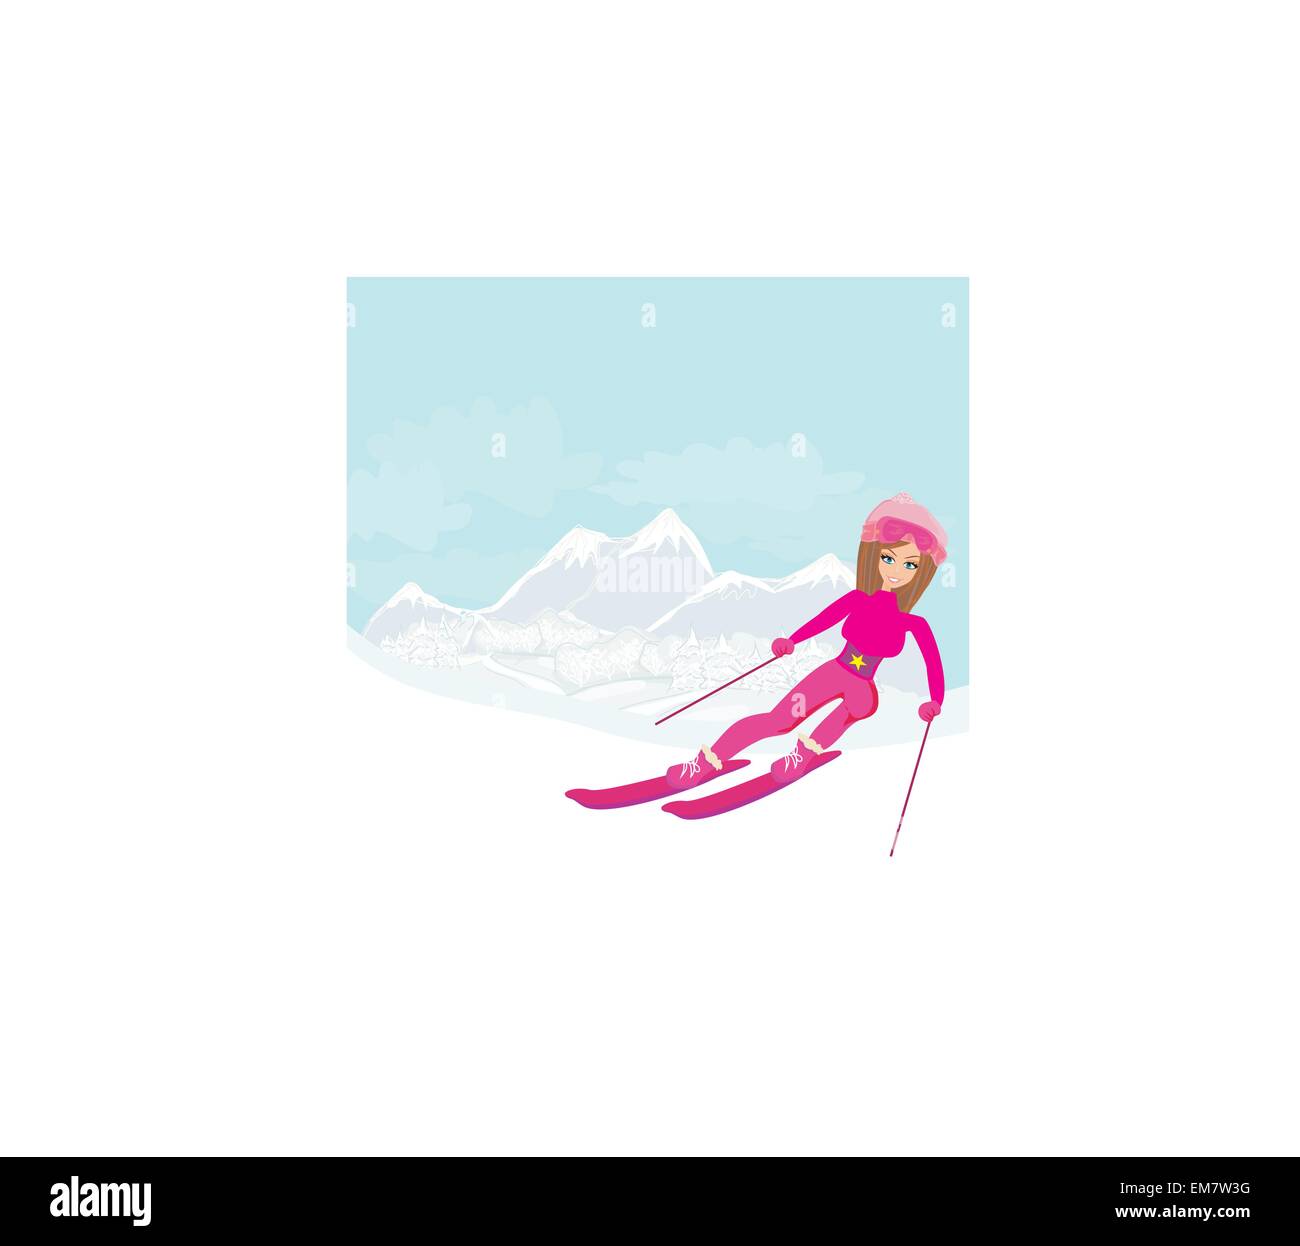 Darstellung einer jungen Frau Skifahren auf einem schneebedeckten Berg unter strahlend blauem Himmel sonnig Stock Vektor